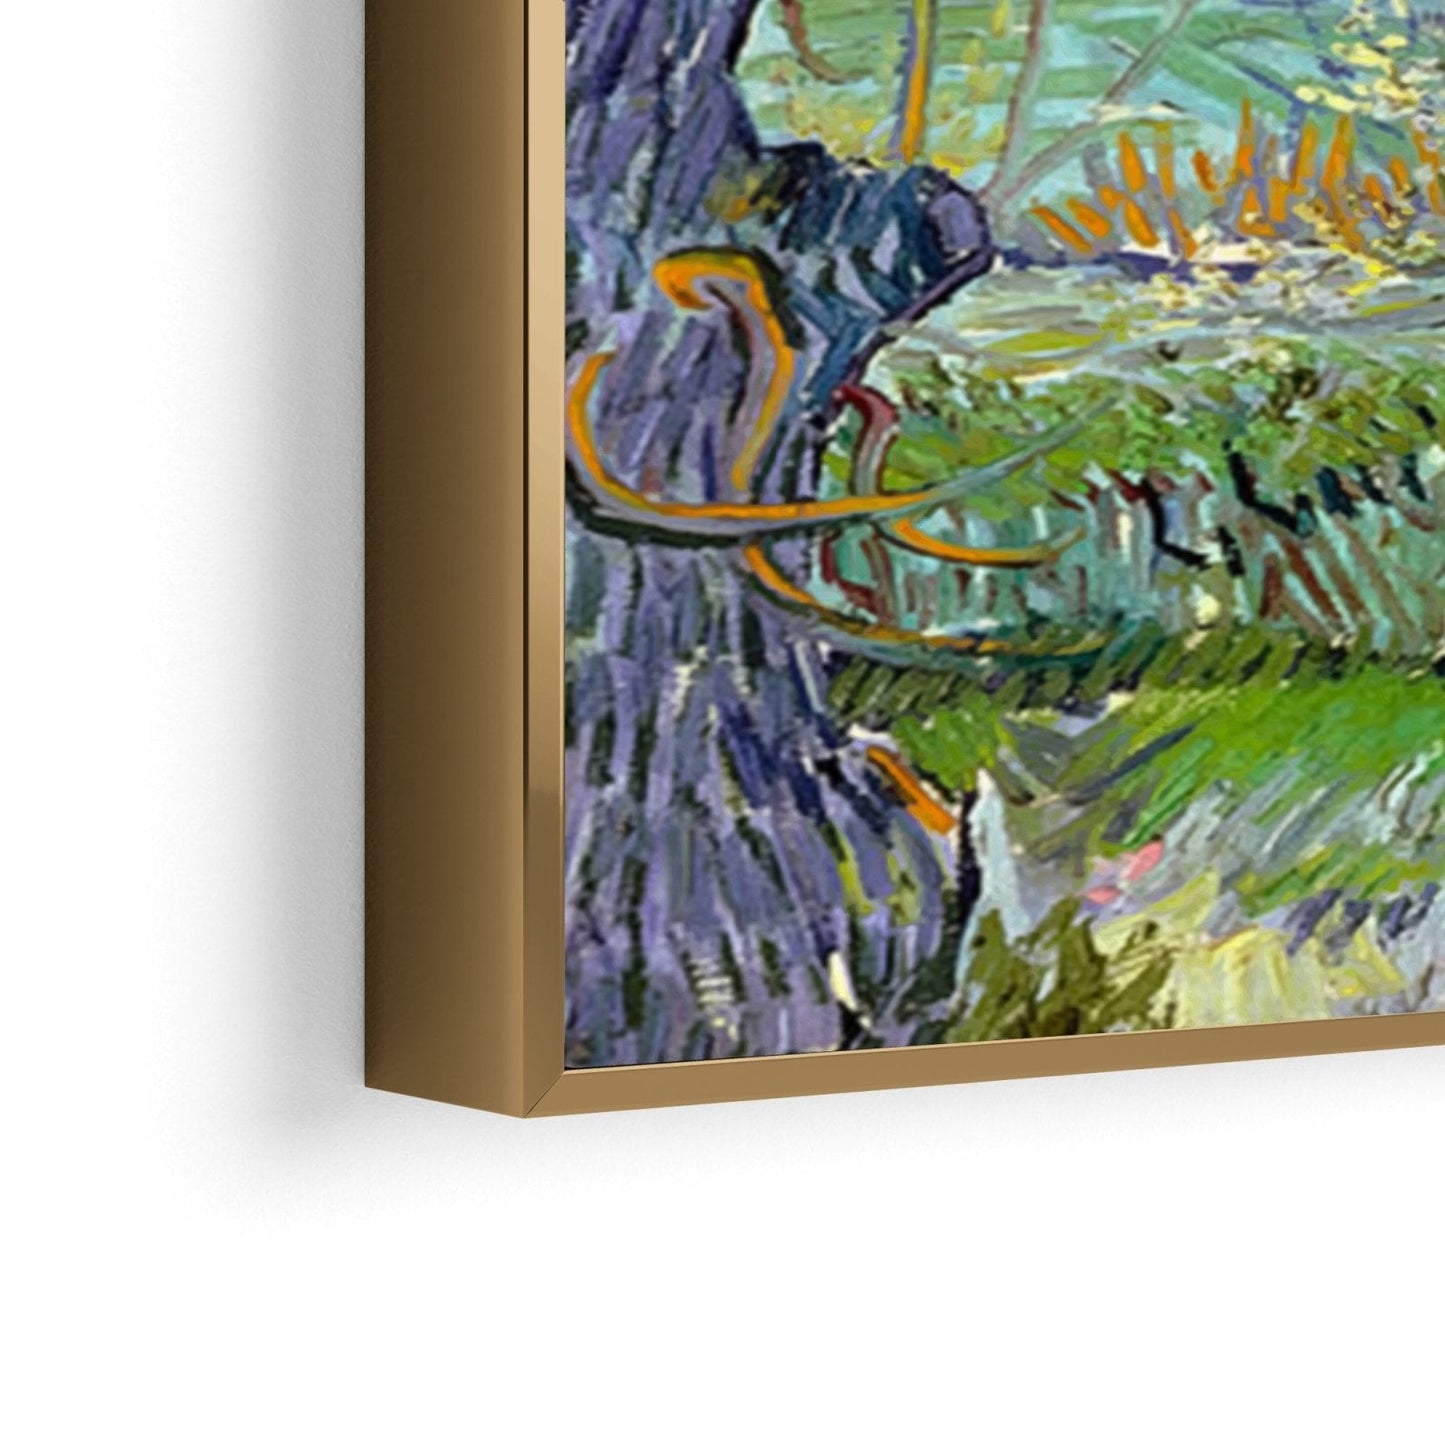 Vista de Arlés, Vincent Van Gogh